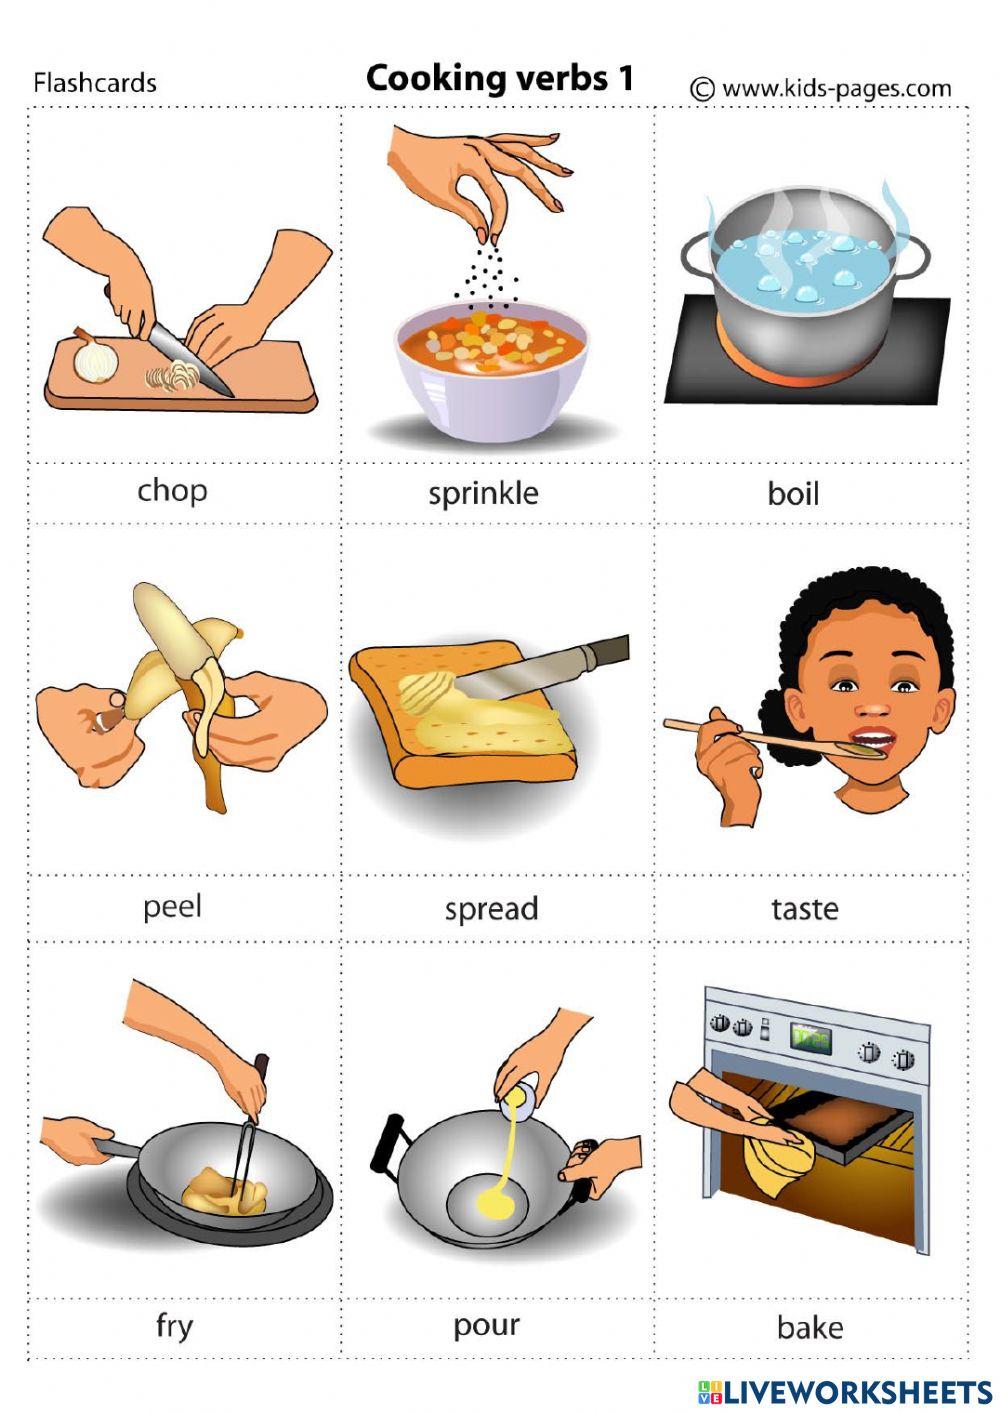 Переведи на английский готовить. Cooking verbs for Kids. Глаголы готовки на английском. Приготовление еды на английском языке. Глаголы приготовления пищи на английском.